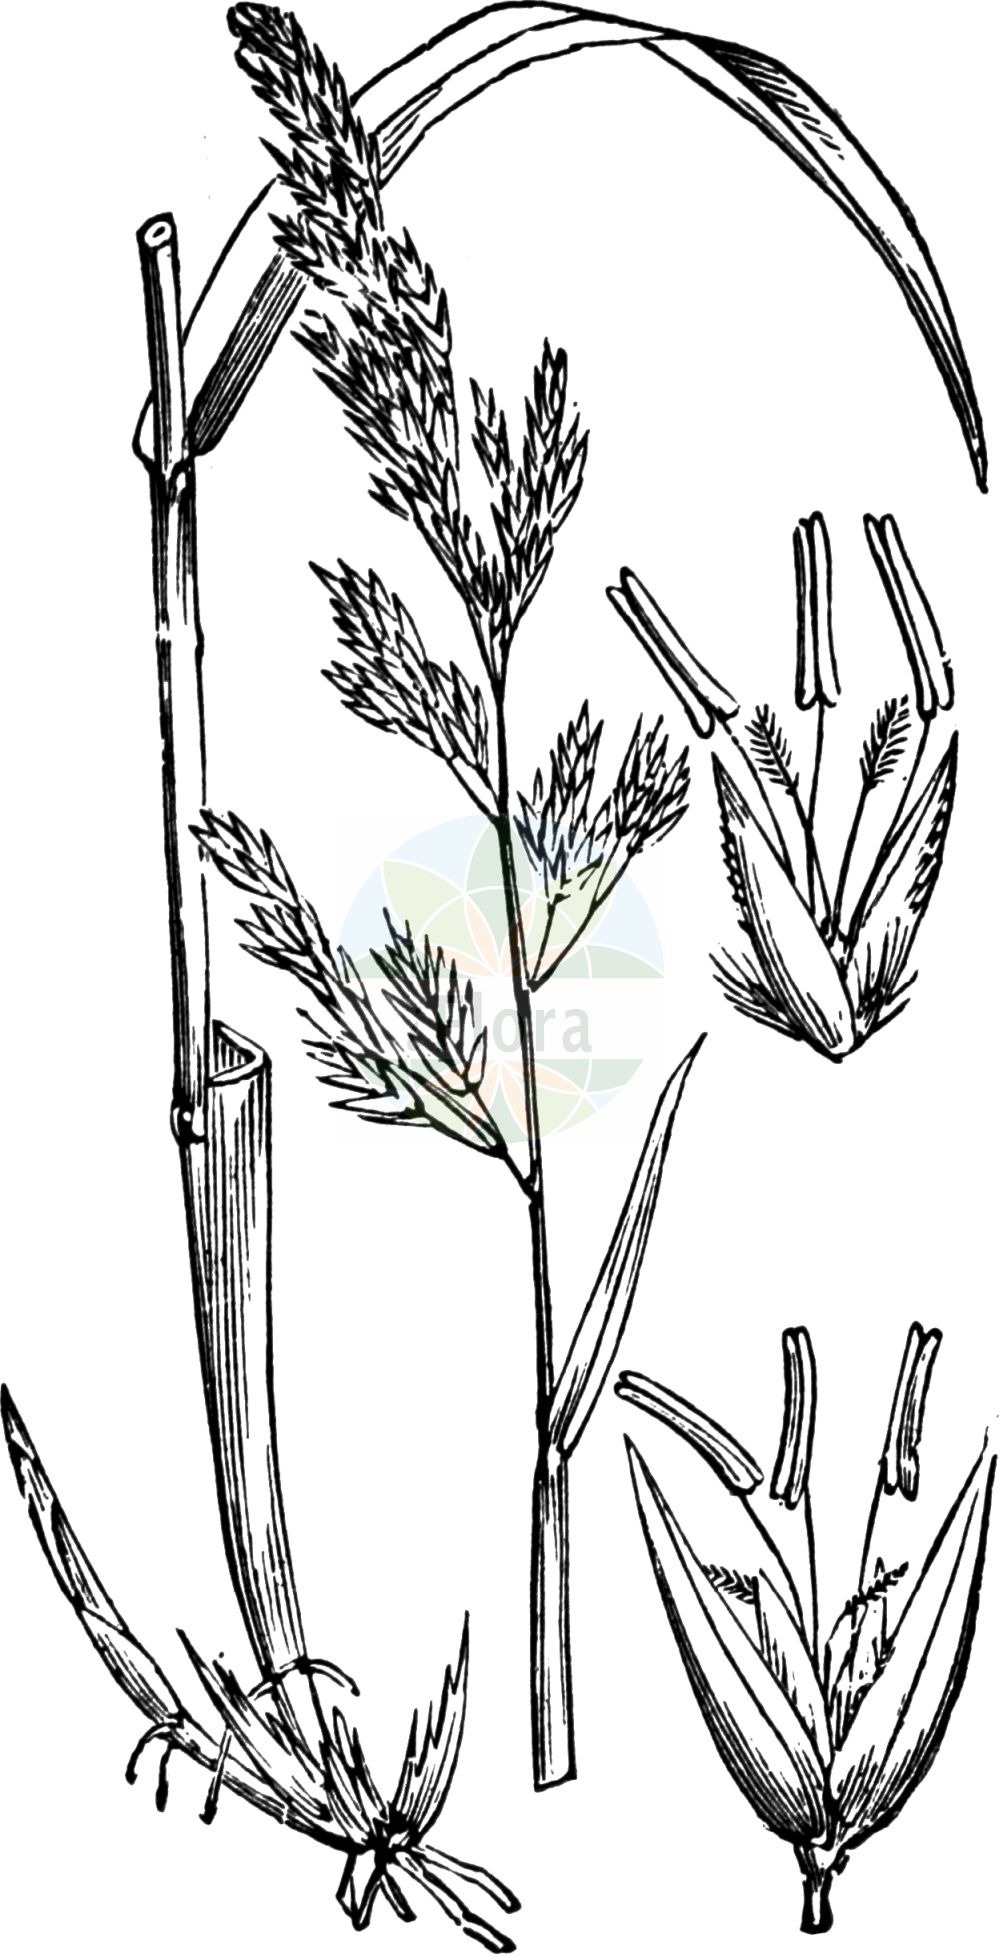 Historische Abbildung von Phalaroides arundinacea (Rohr-Glanzgras - Reed Canary-grass). Das Bild zeigt Blatt, Bluete, Frucht und Same. ---- Historical Drawing of Phalaroides arundinacea (Rohr-Glanzgras - Reed Canary-grass). The image is showing leaf, flower, fruit and seed.(Phalaroides arundinacea,Rohr-Glanzgras,Reed Canary-grass,Baldingera arundinacea,Digraphis arundinacea,Phalaris arundinacea,Phalaroides arundinacea,Typhoides arundinacea,Rohr-Glanzgras,Reed Canary-grass,Reedgrass,Phalaroides,Poaceae,Süßgräser,Grass family,Blatt,Bluete,Frucht,Same,leaf,flower,fruit,seed,Fitch et al. (1880))